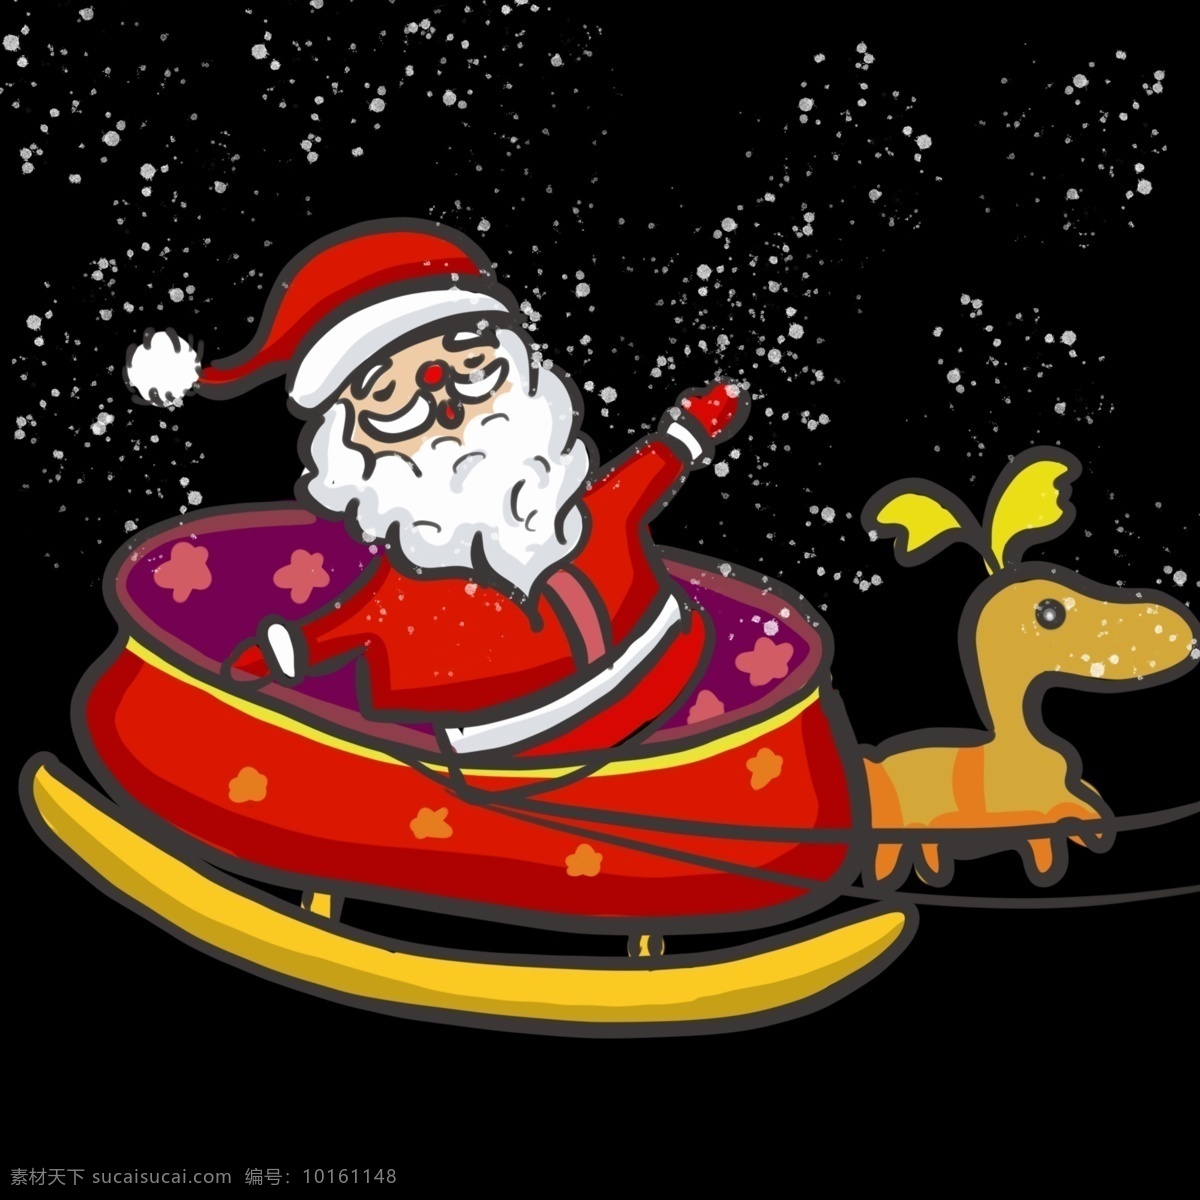 诞 卡通 手绘 圣诞老人 小车 车 圣诞节 圣诞节快乐 过节日 西方节日 西方传统节日 卡通手绘风 暖色系 手绘人物